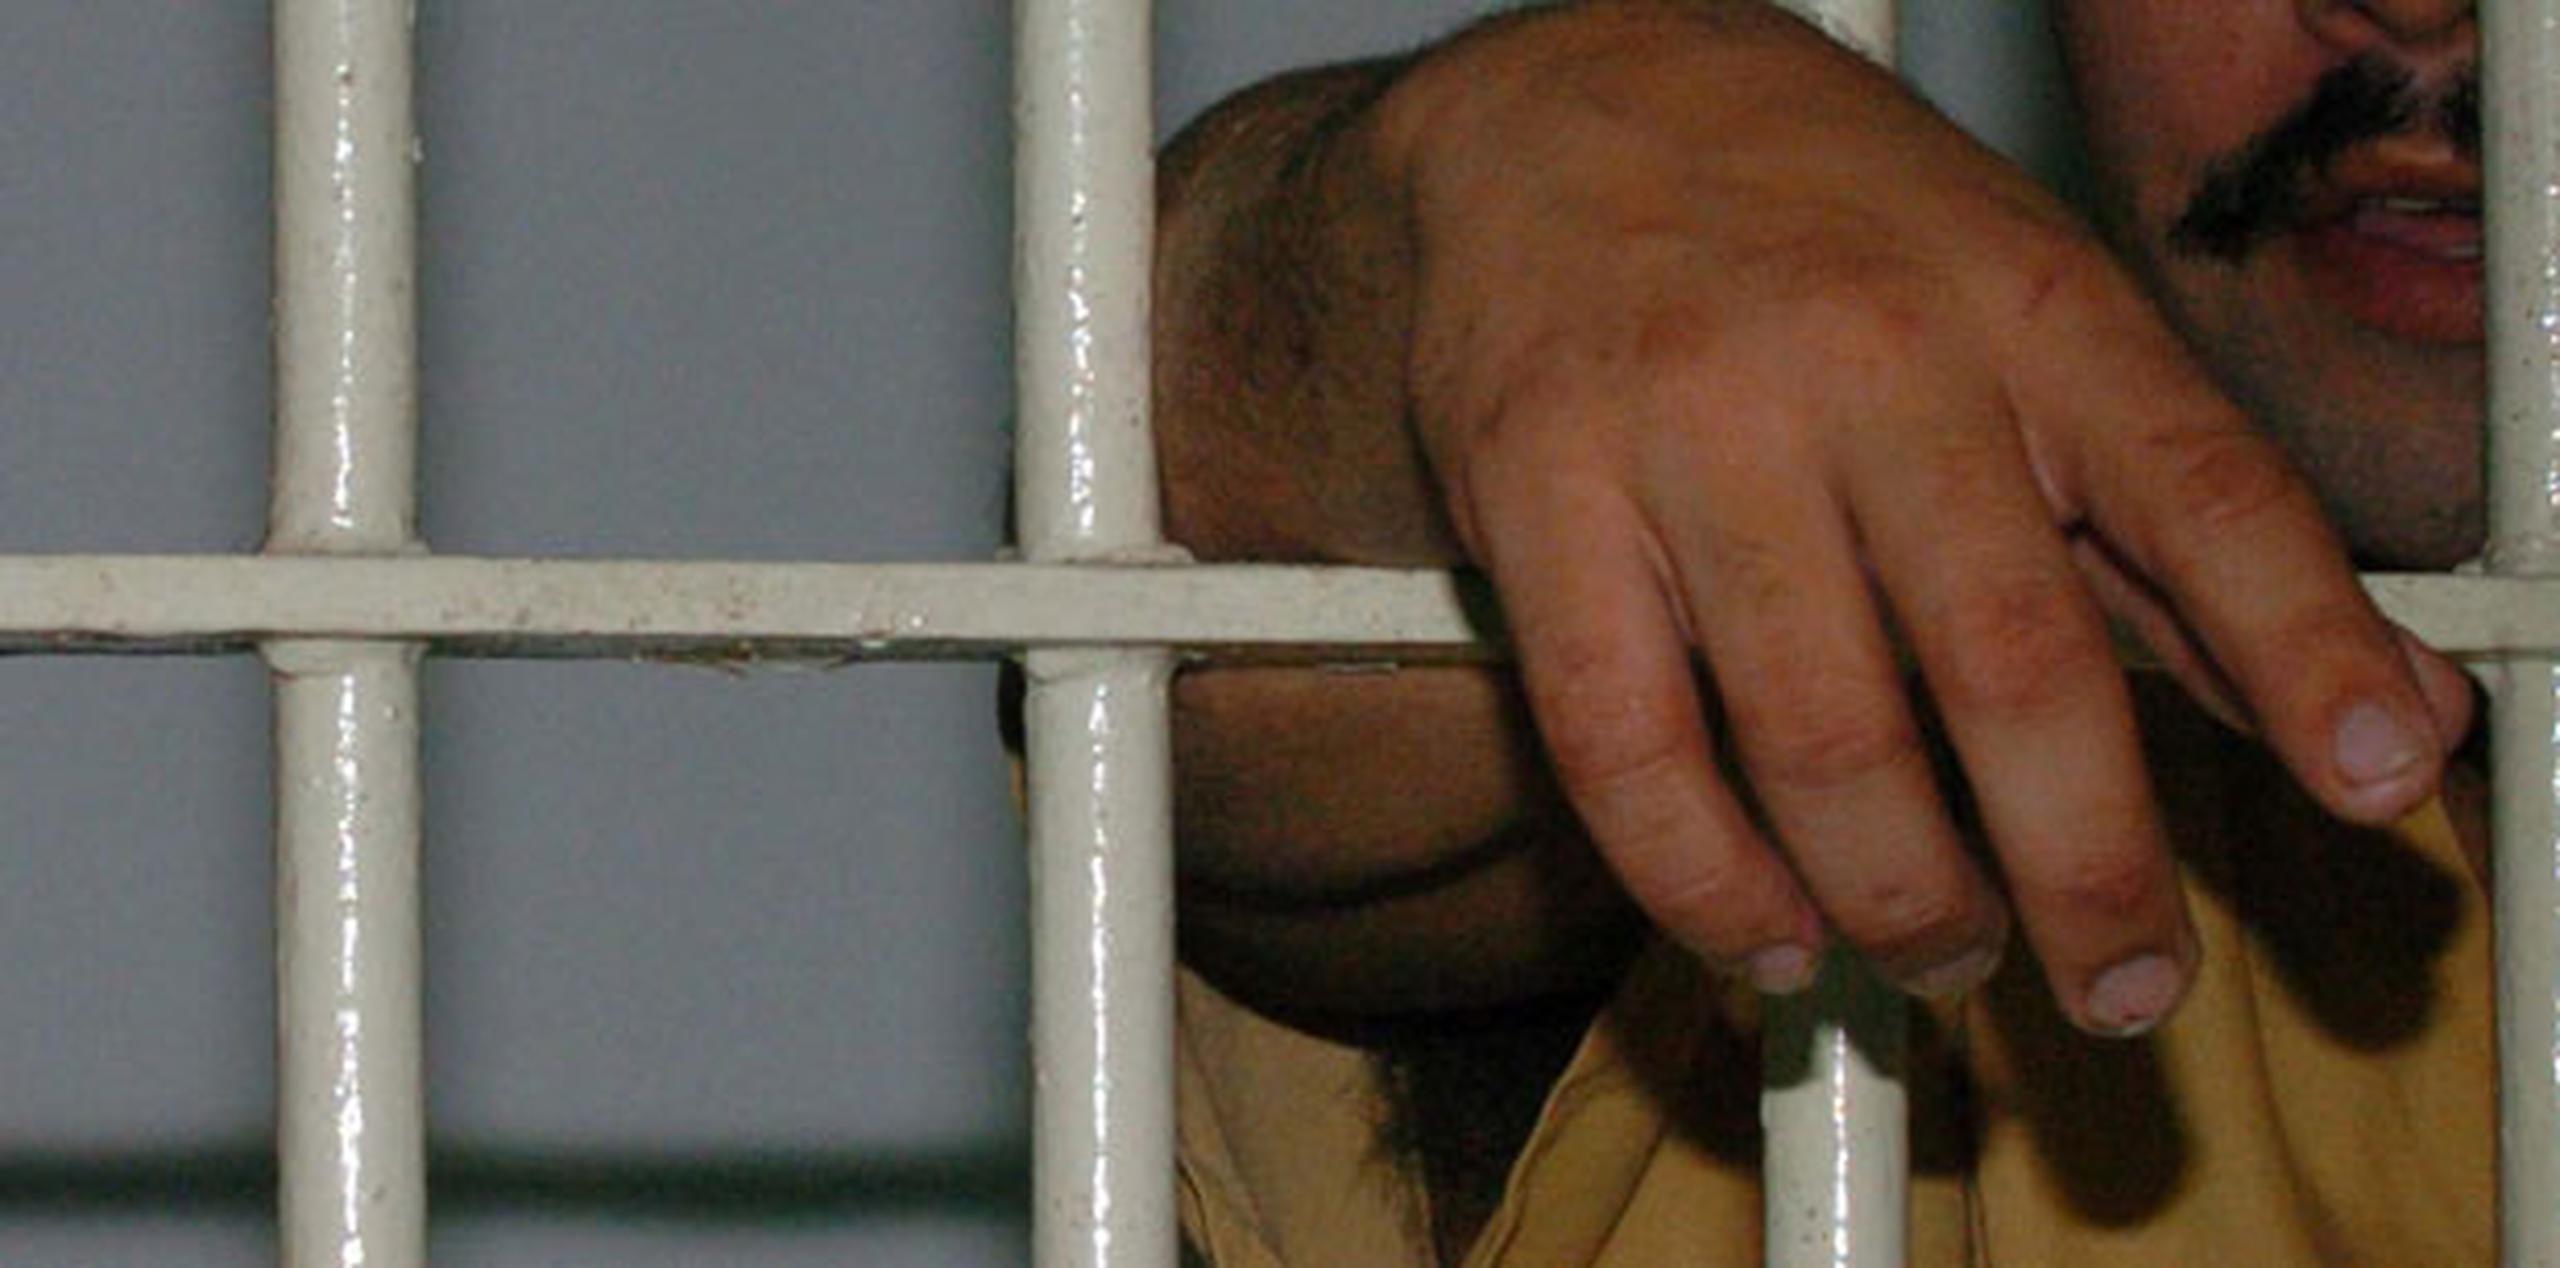 Sánchez Velázquez hizo alegación de culpabilidad el 28 de enero pasado por conspirar para distribuir narcóticos tras llegar a un acuerdo con la fiscalía para cumplir tres años y ocho meses de prisión.  (Archivo)